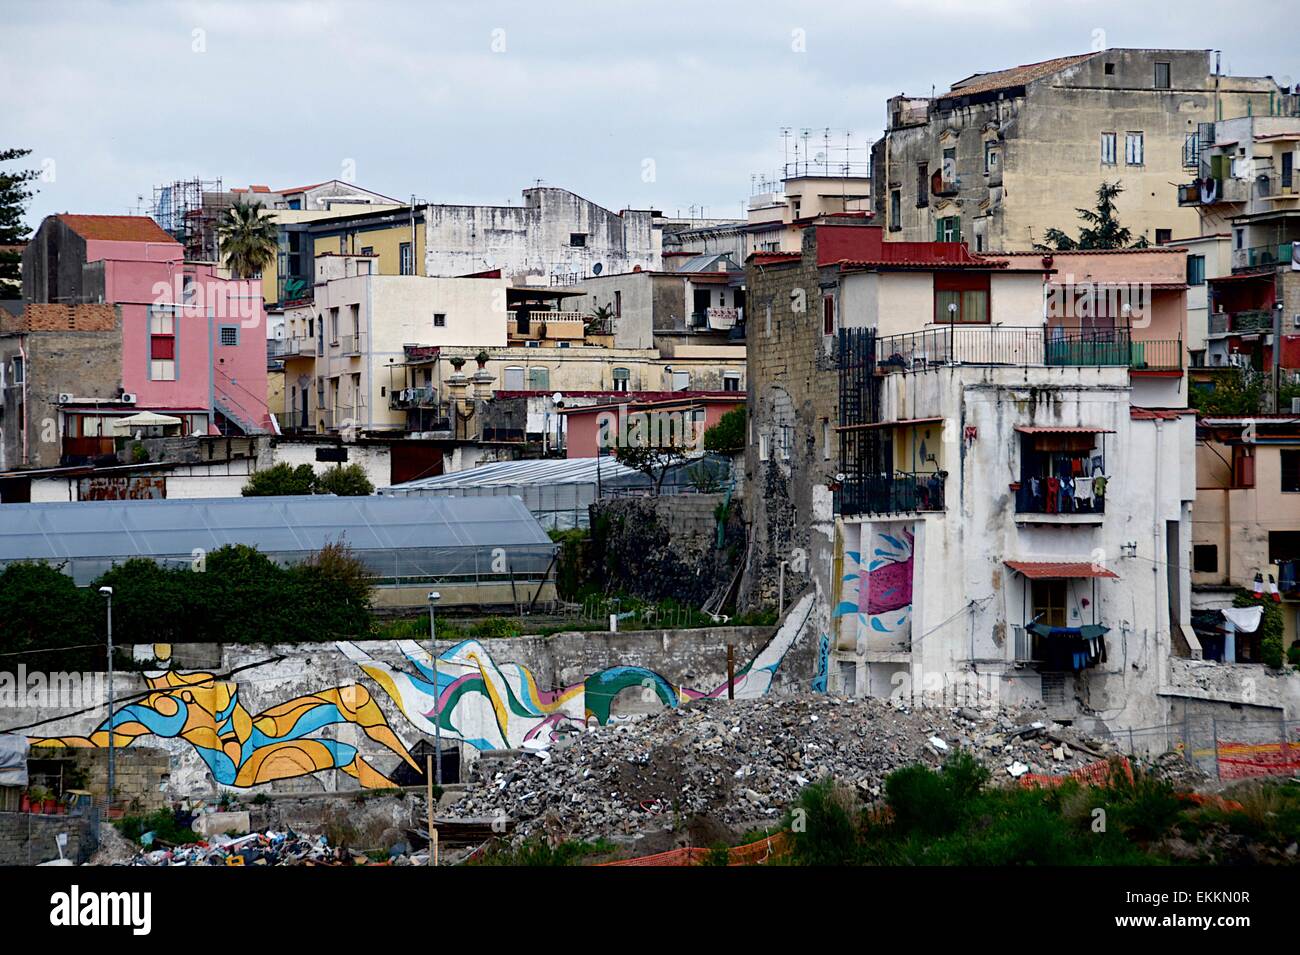 Maison à Ercolano, une banlieue pauvre de Naples, Italie montrant les conditions de vie et la pauvreté Banque D'Images